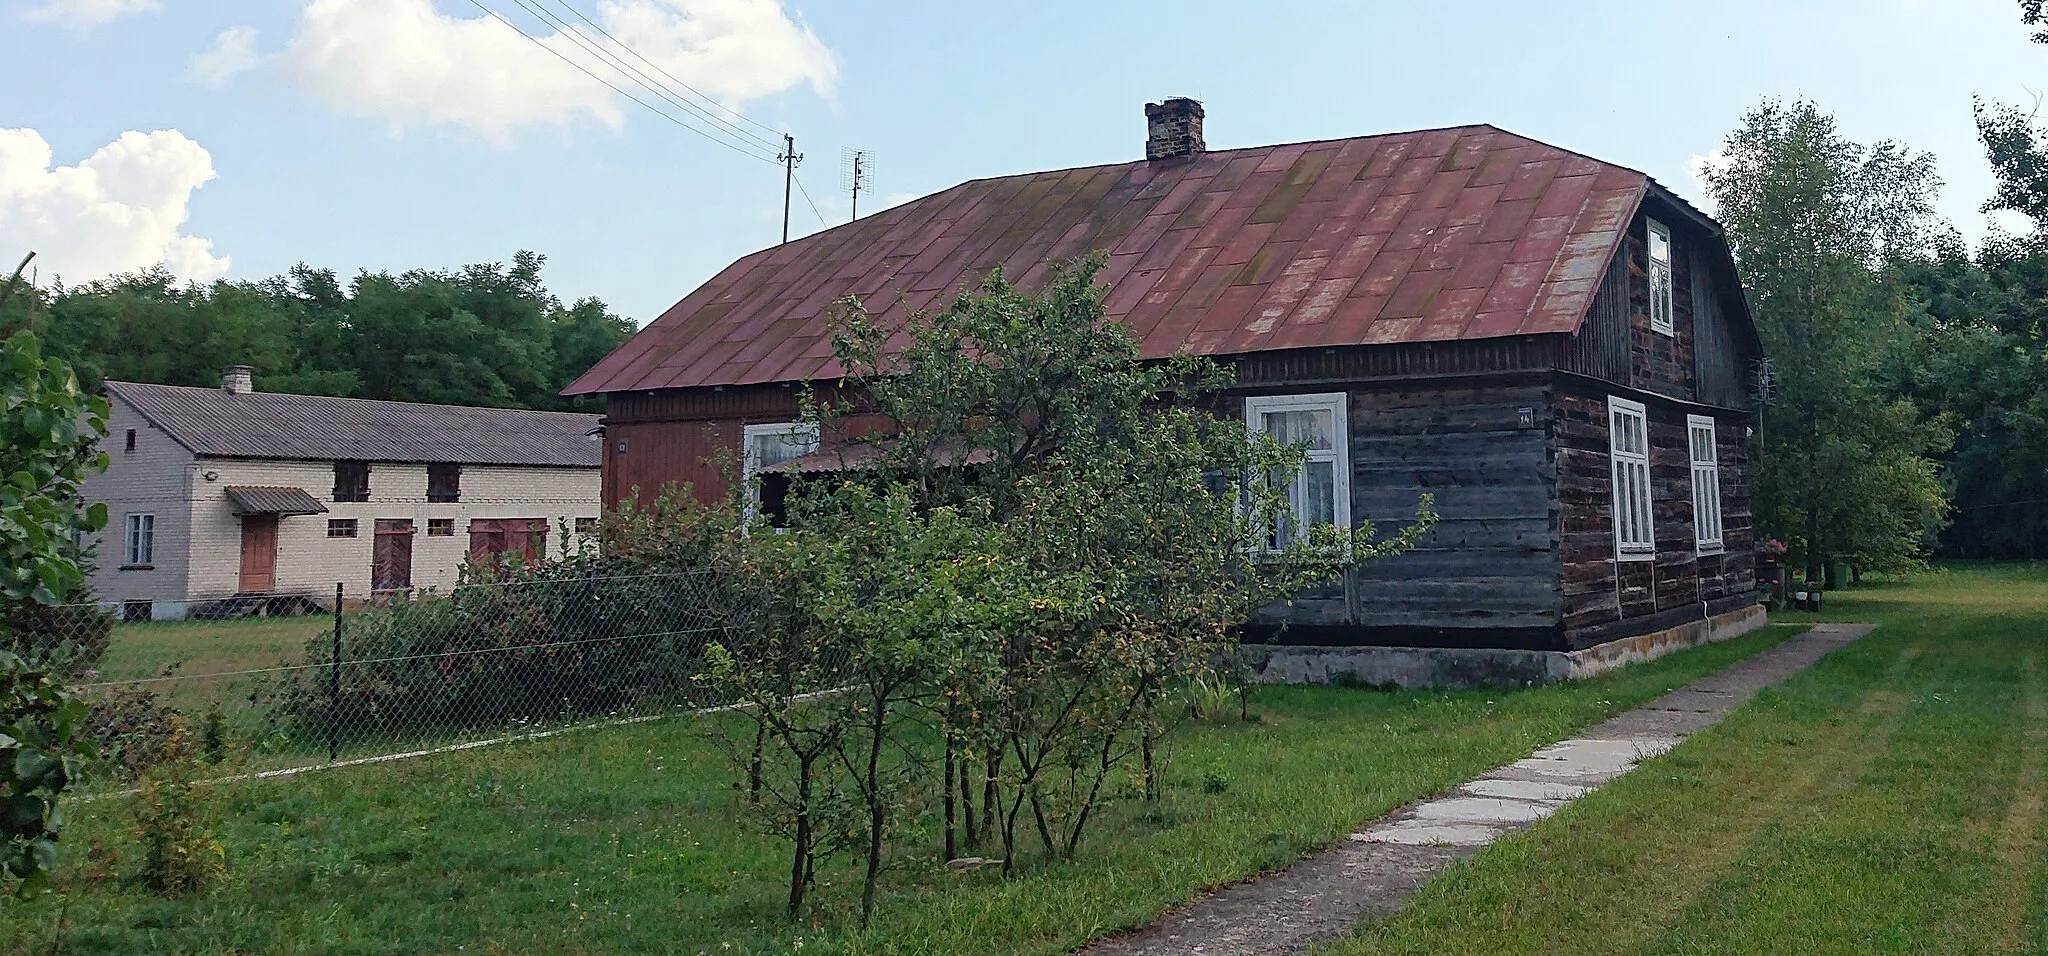 Photo showing: Dom małżeństwa Rożków, w którym mieściła się szkoła powszechna w Małowidzu, powiat przasnyski